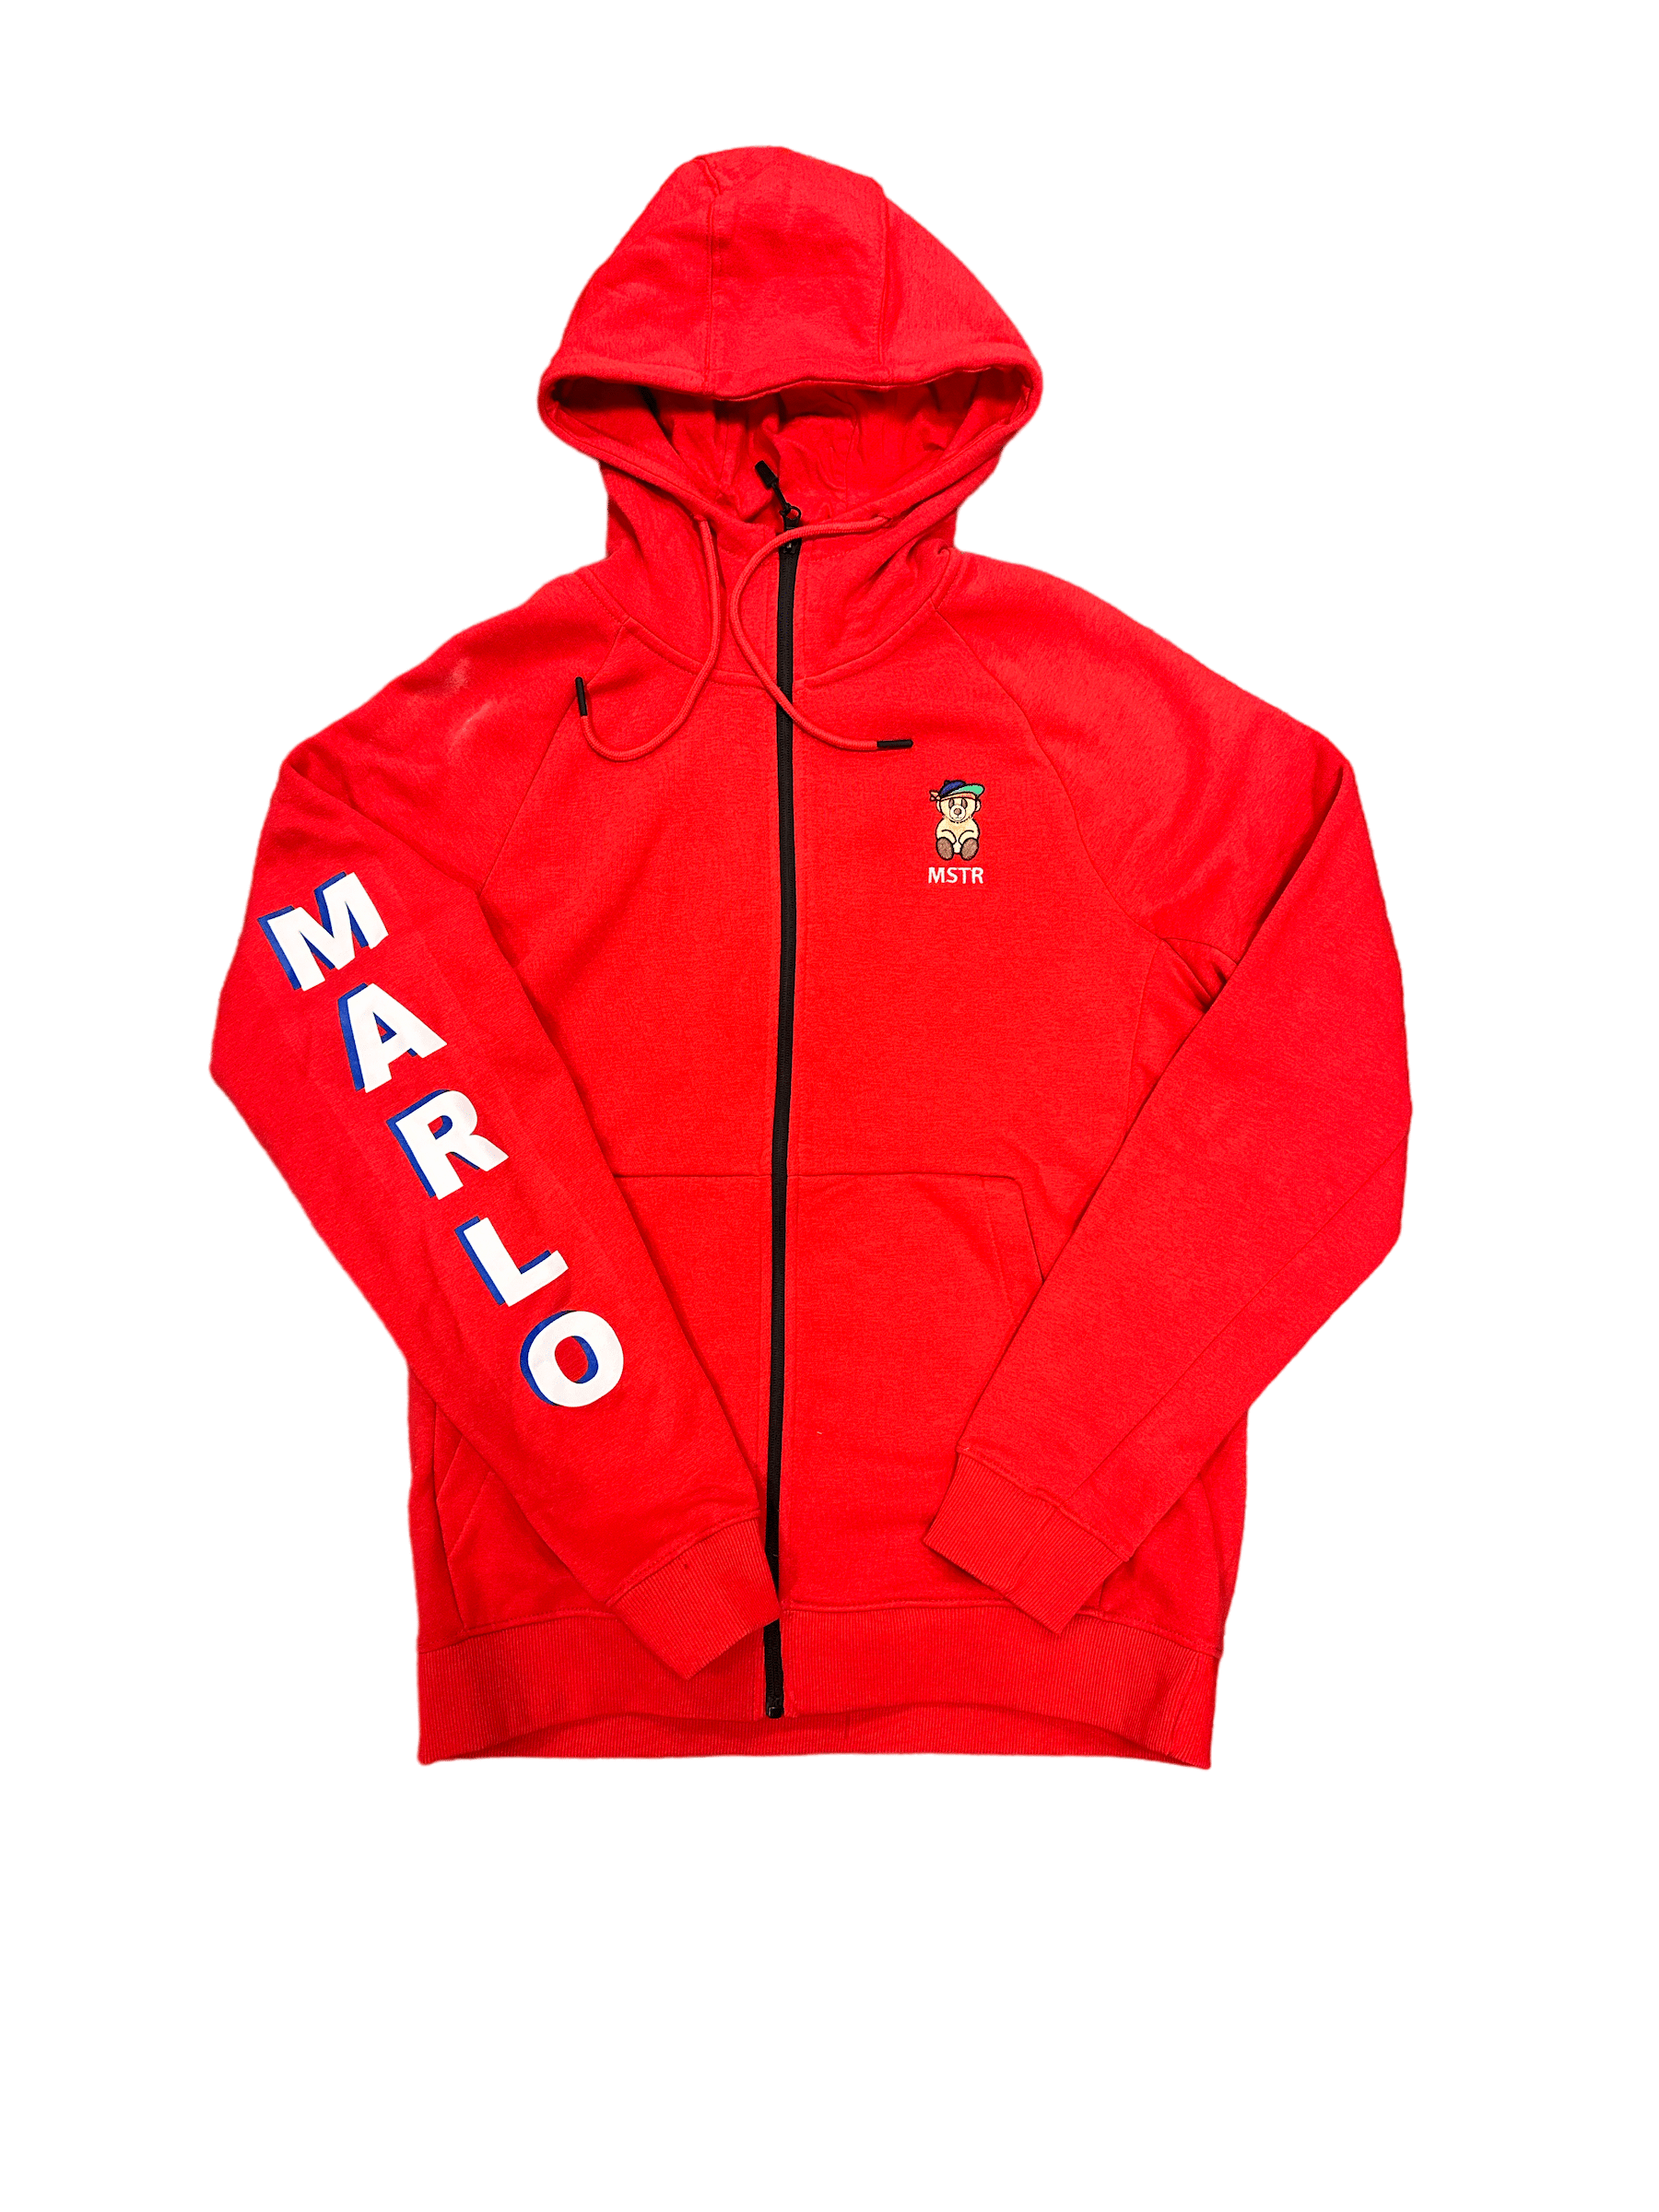 Mastermind315 Marlo American hoodie